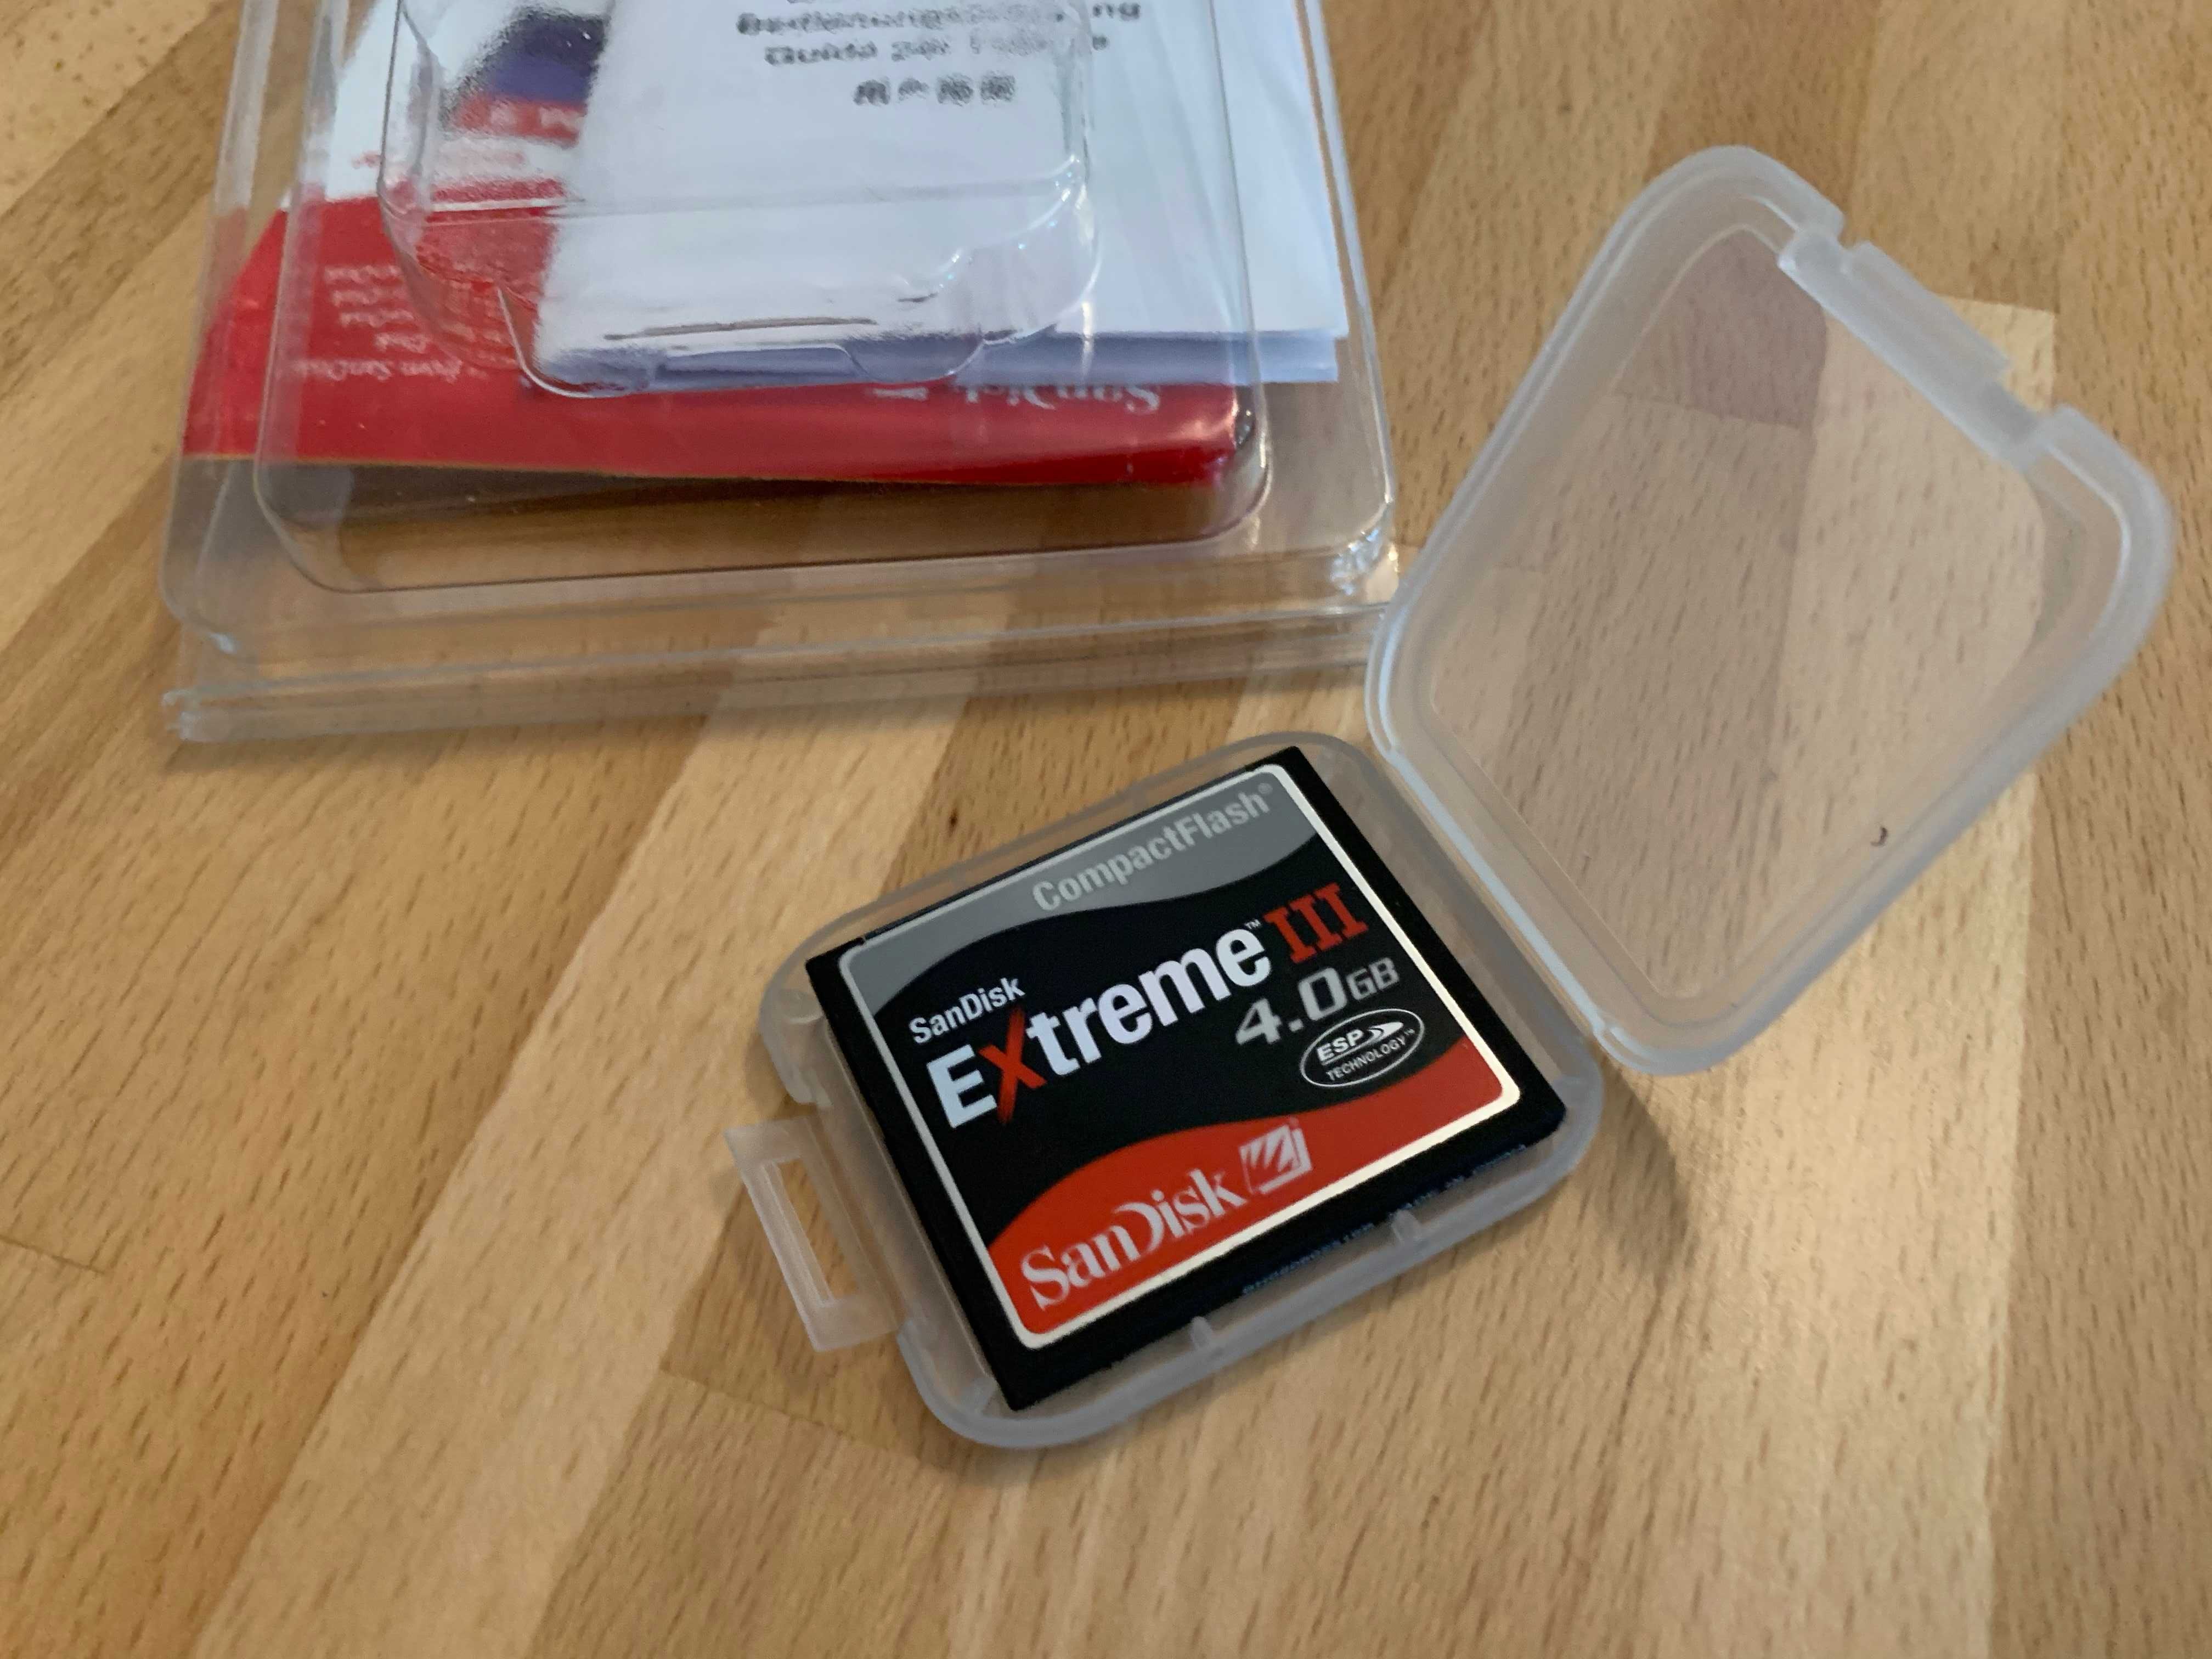 Cartão memória CompactFlash SanDisk Extreme III 4GB